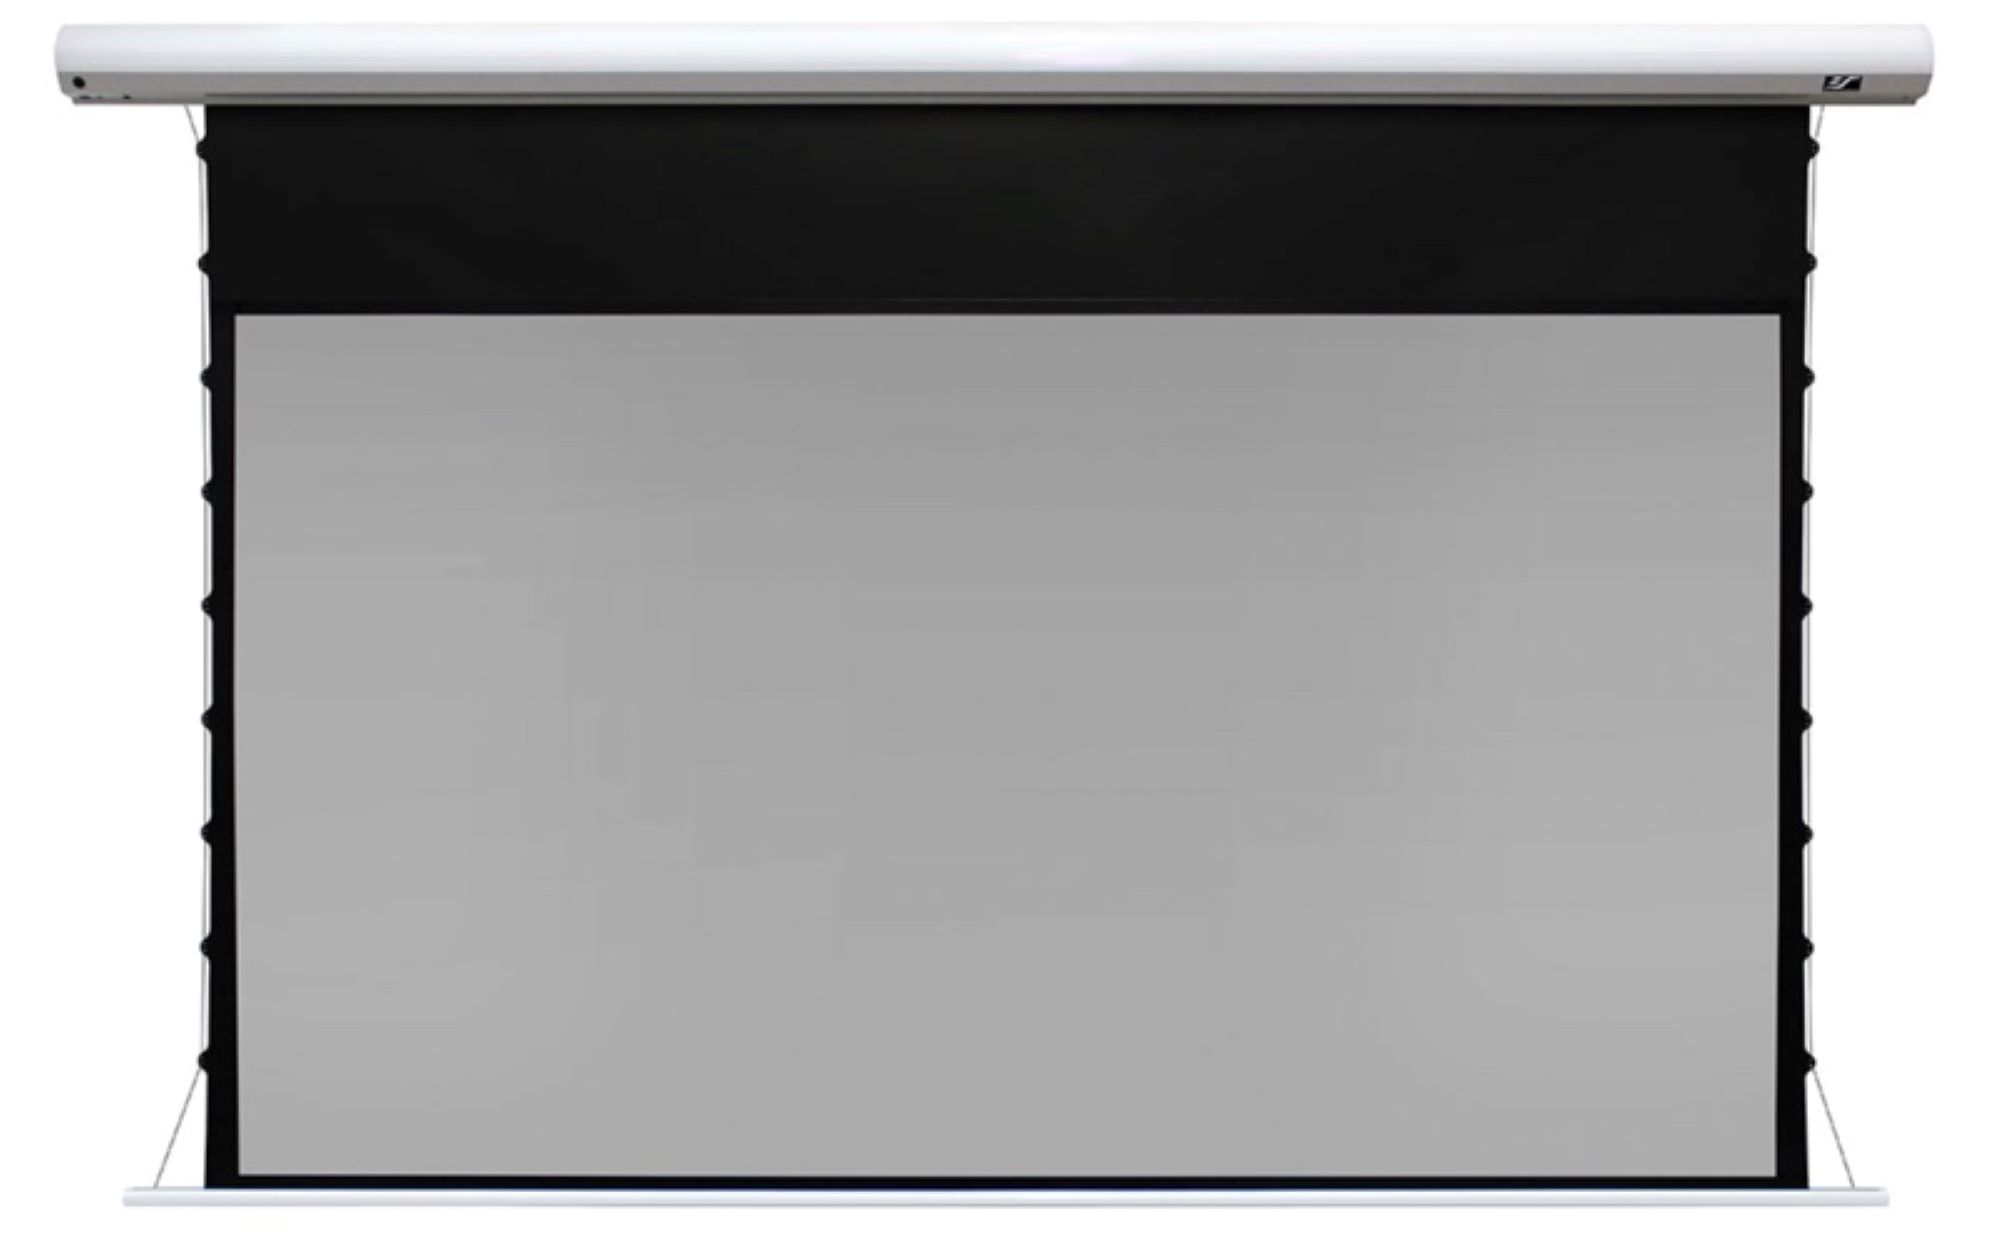 Моторизованные экраны Elite Screens SKT110XHD5-E12 натяжные экраны на раме elite screens er100wh1